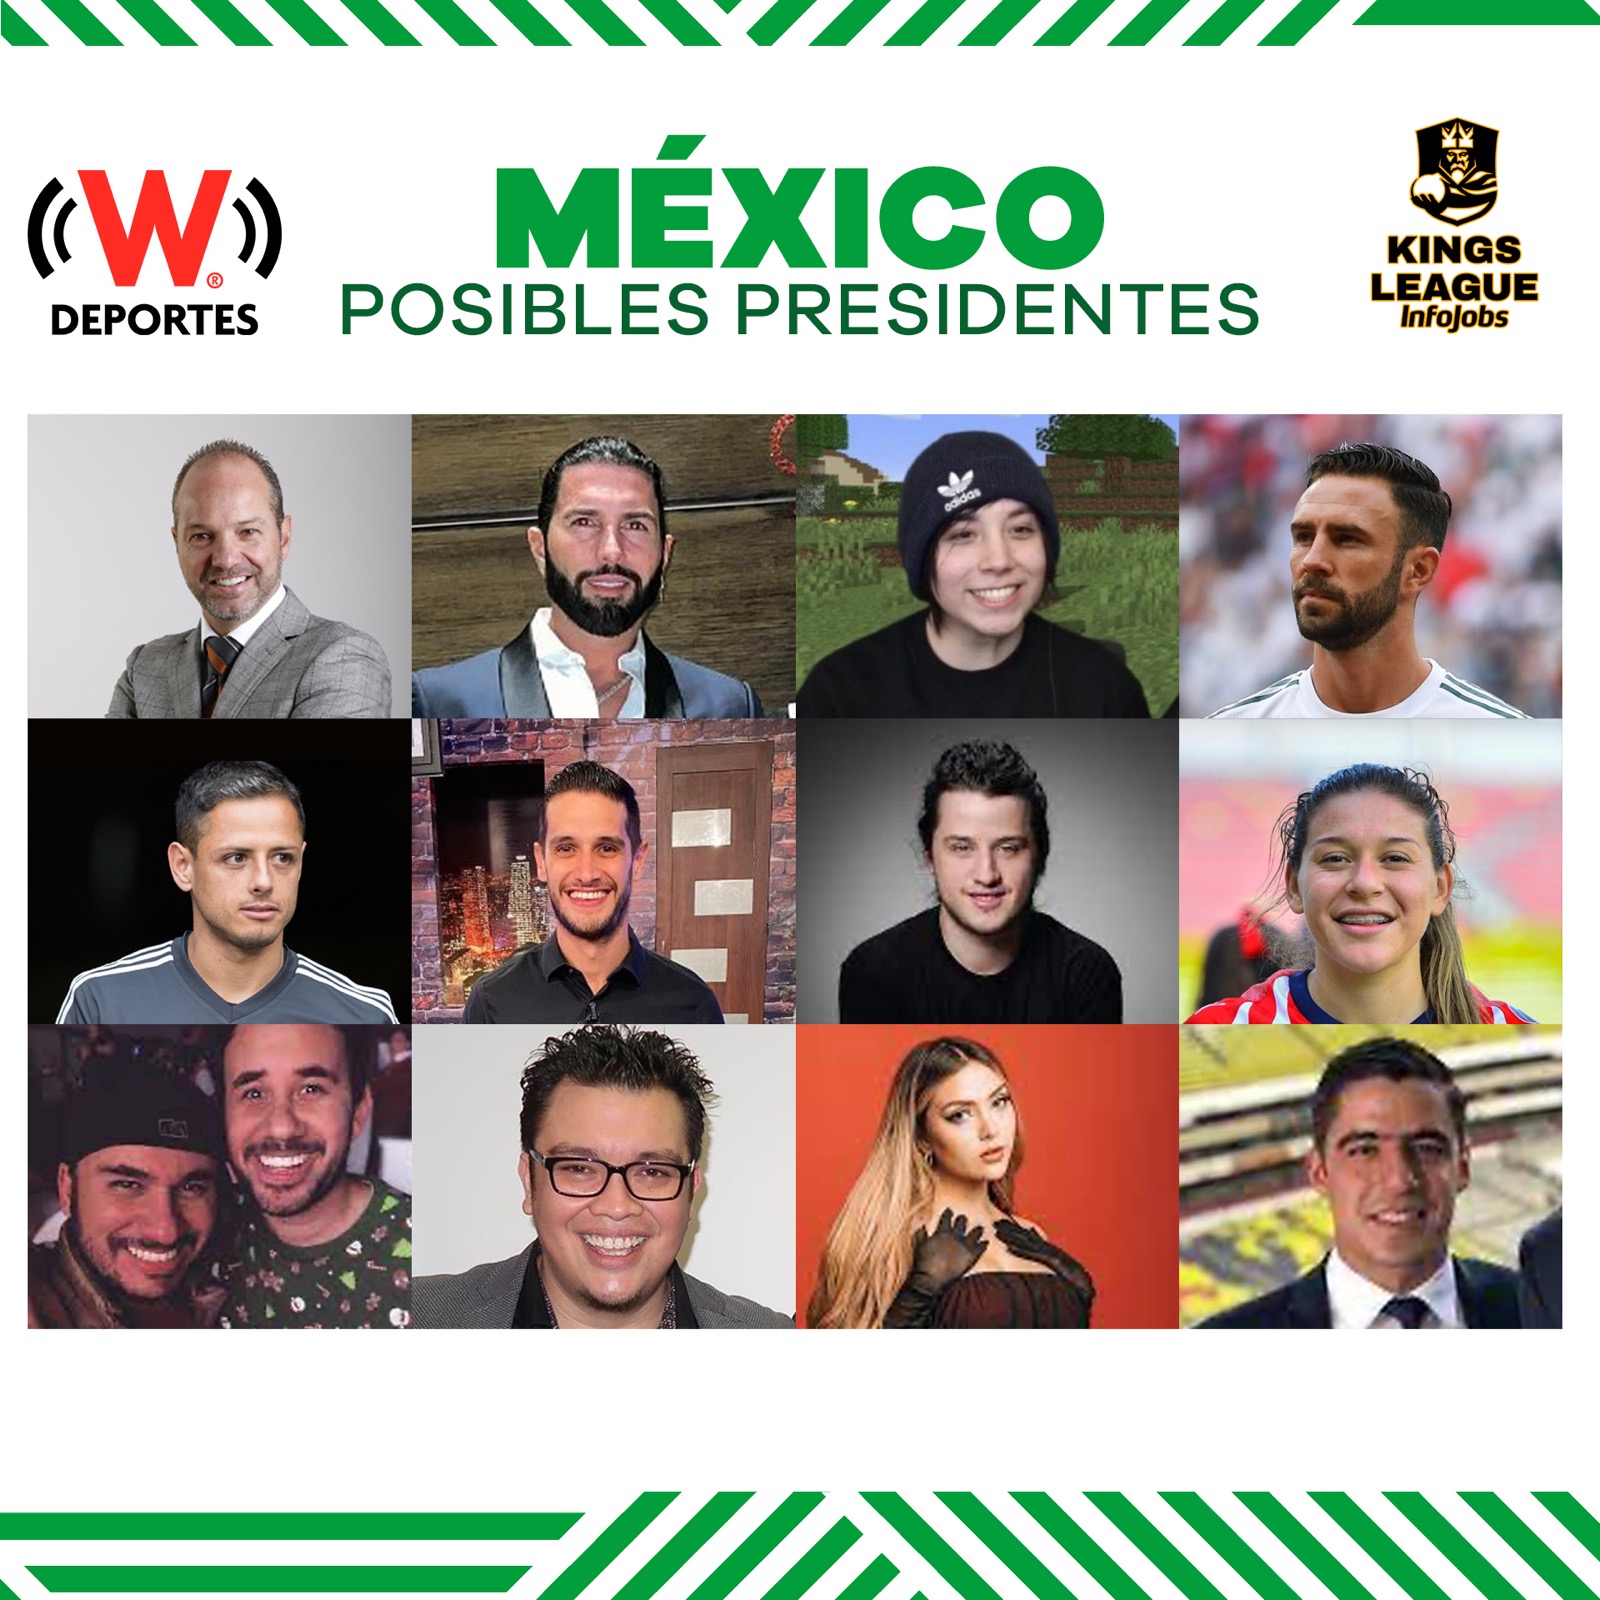 Kings League: Los posibles presidentes en una liga en México